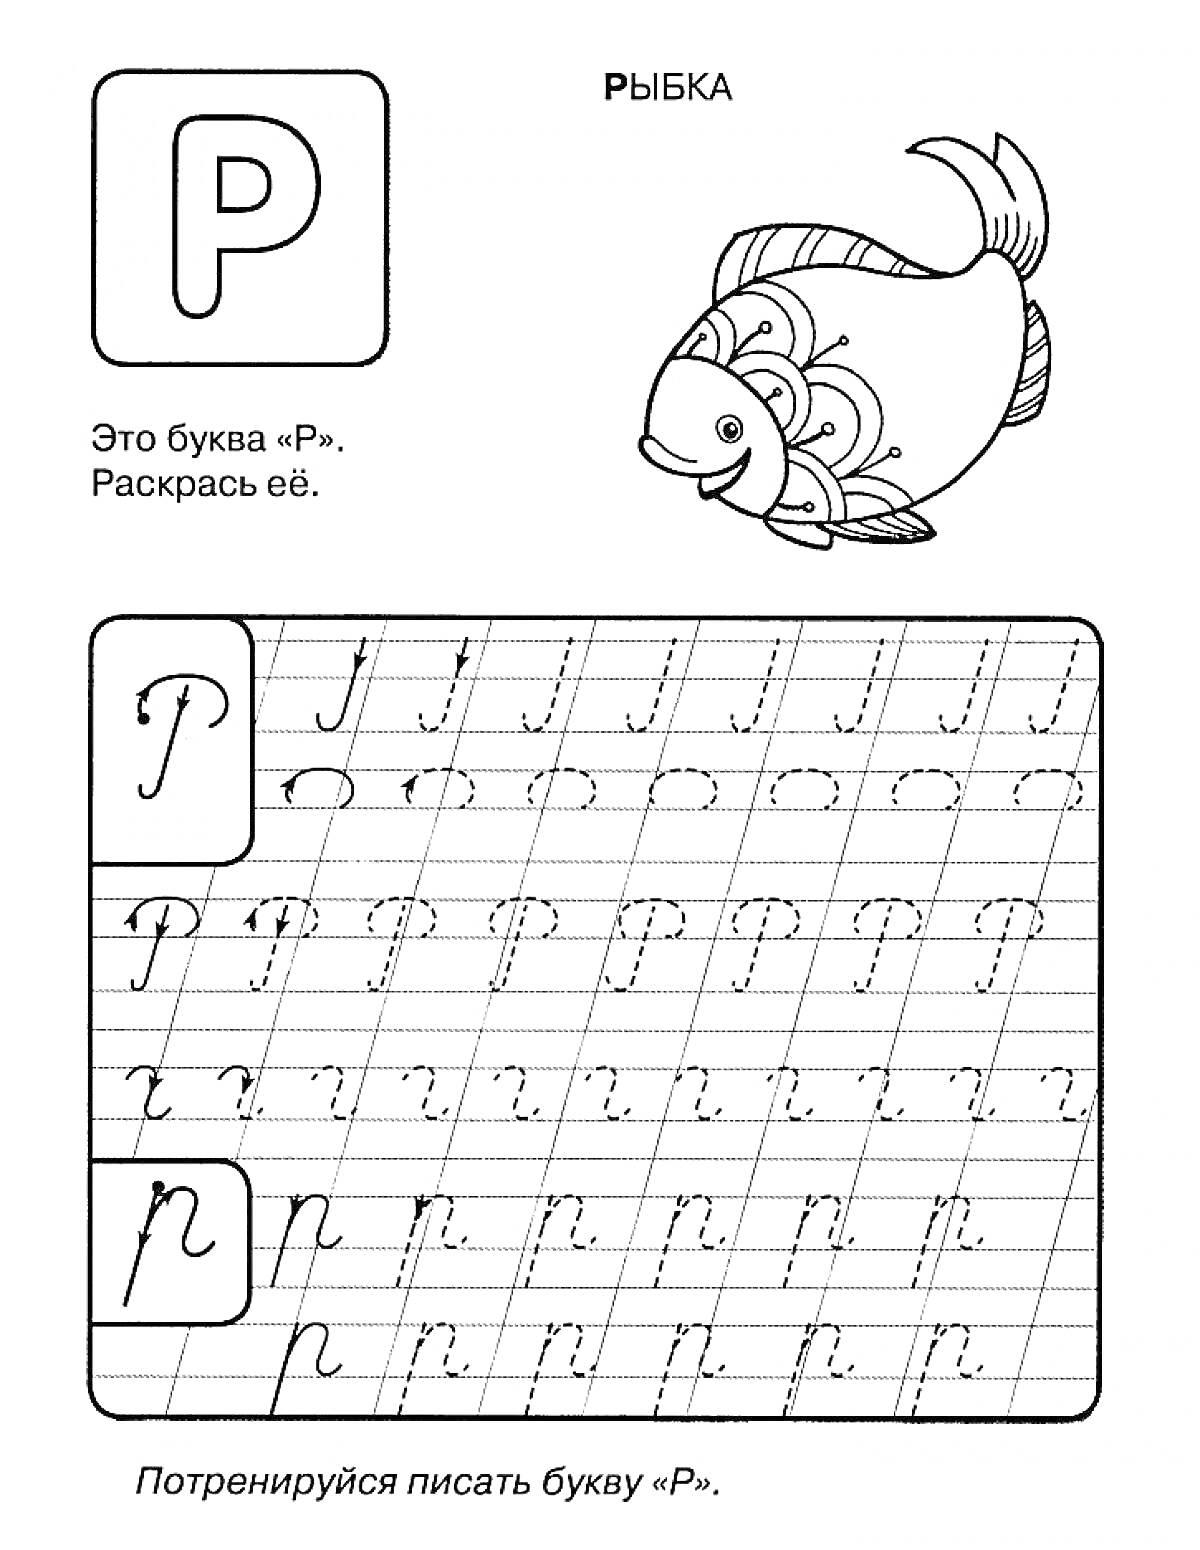 Пропись буквы Р с картинкой рыбки